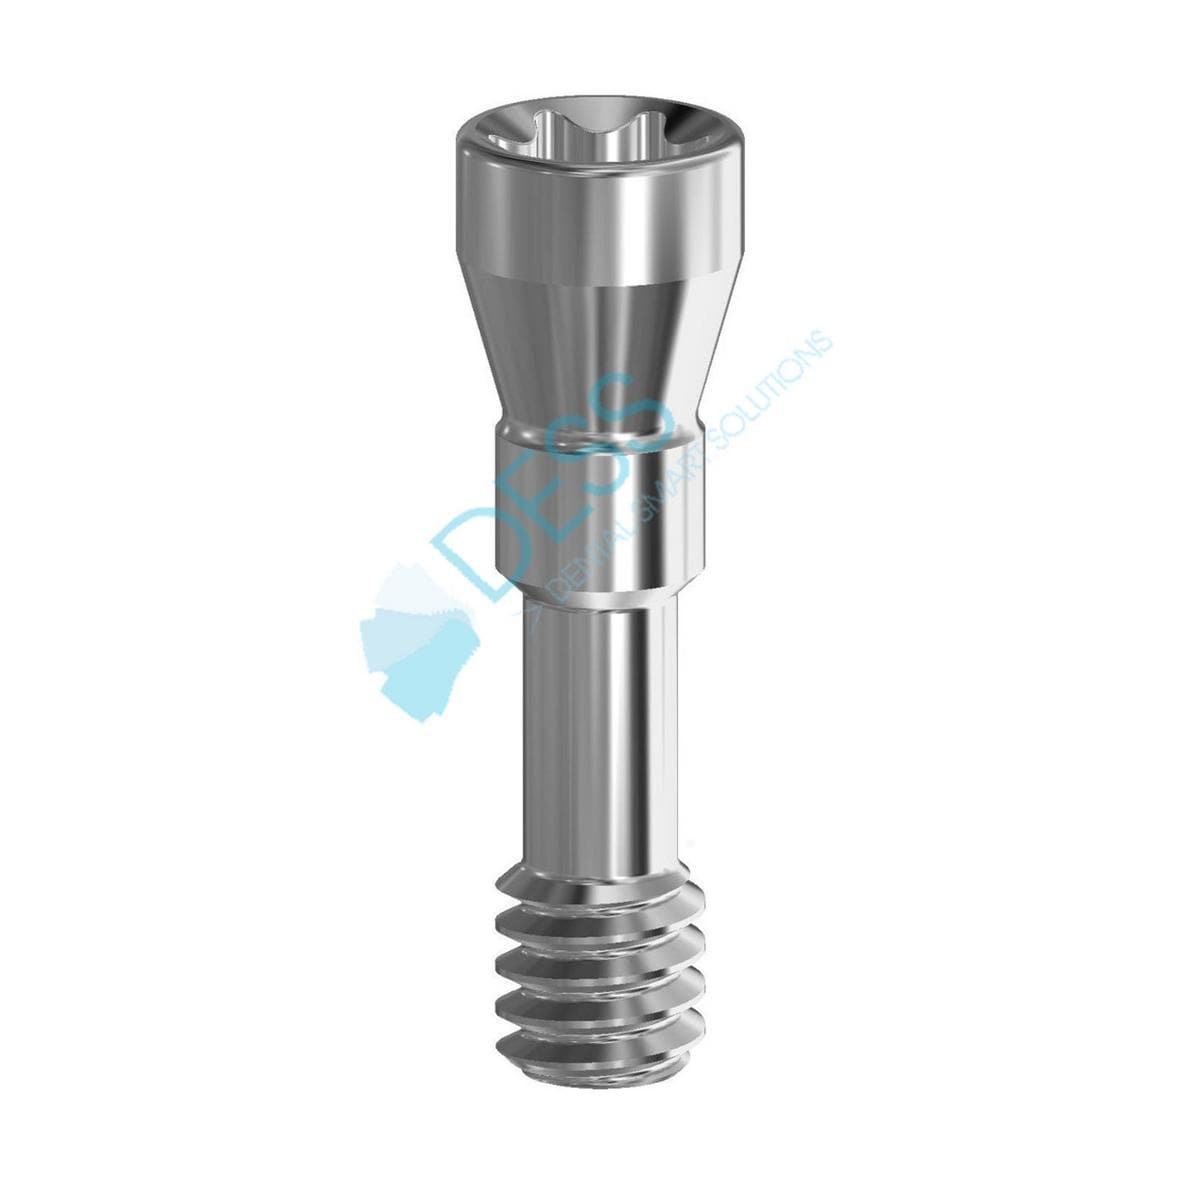 Abutmentschraube Torx® auf Implantat - kompatibel mit Straumann® Bone Level® - RC Ø 4,1 mm, Packung 1 Stück